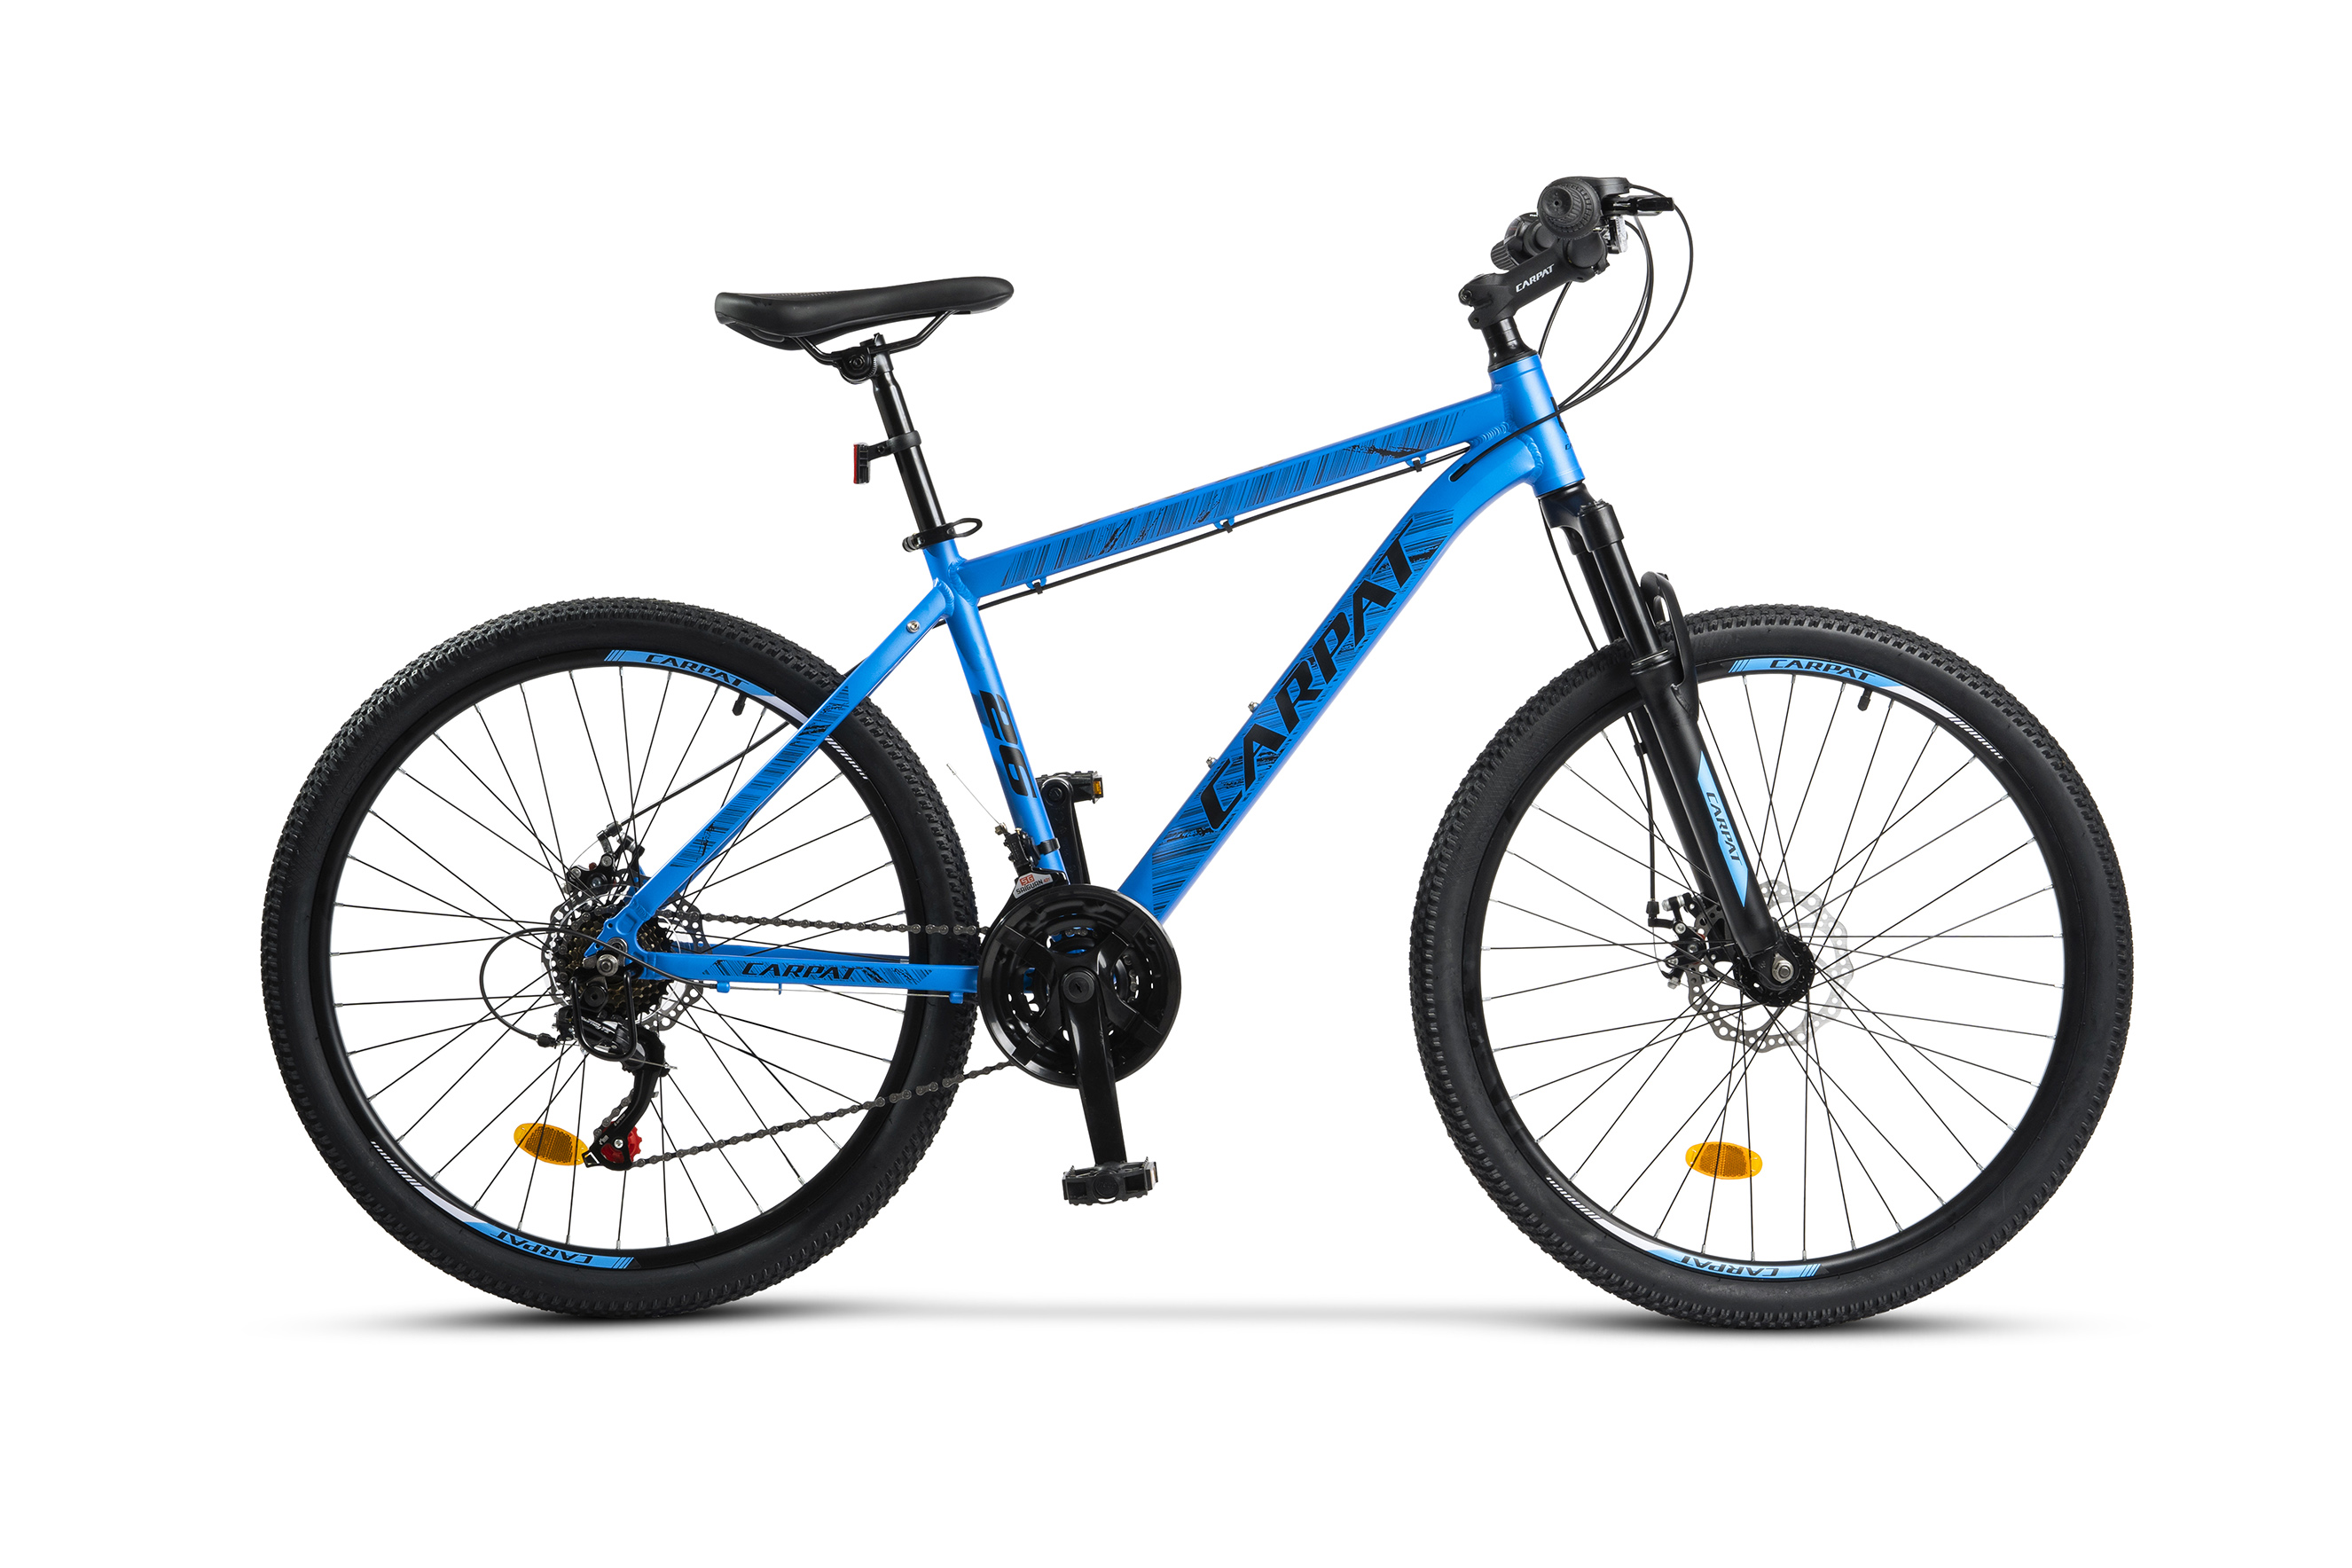 BICICLETE DE MUNTE - Bicicleta MTB-HT, 21 viteze, Roti 26 Inch, Cadru Aluminiu 6061, Frane pe Disc, Carpat C2684C, Albastru cu Design Negru, https:carpatsport.ro